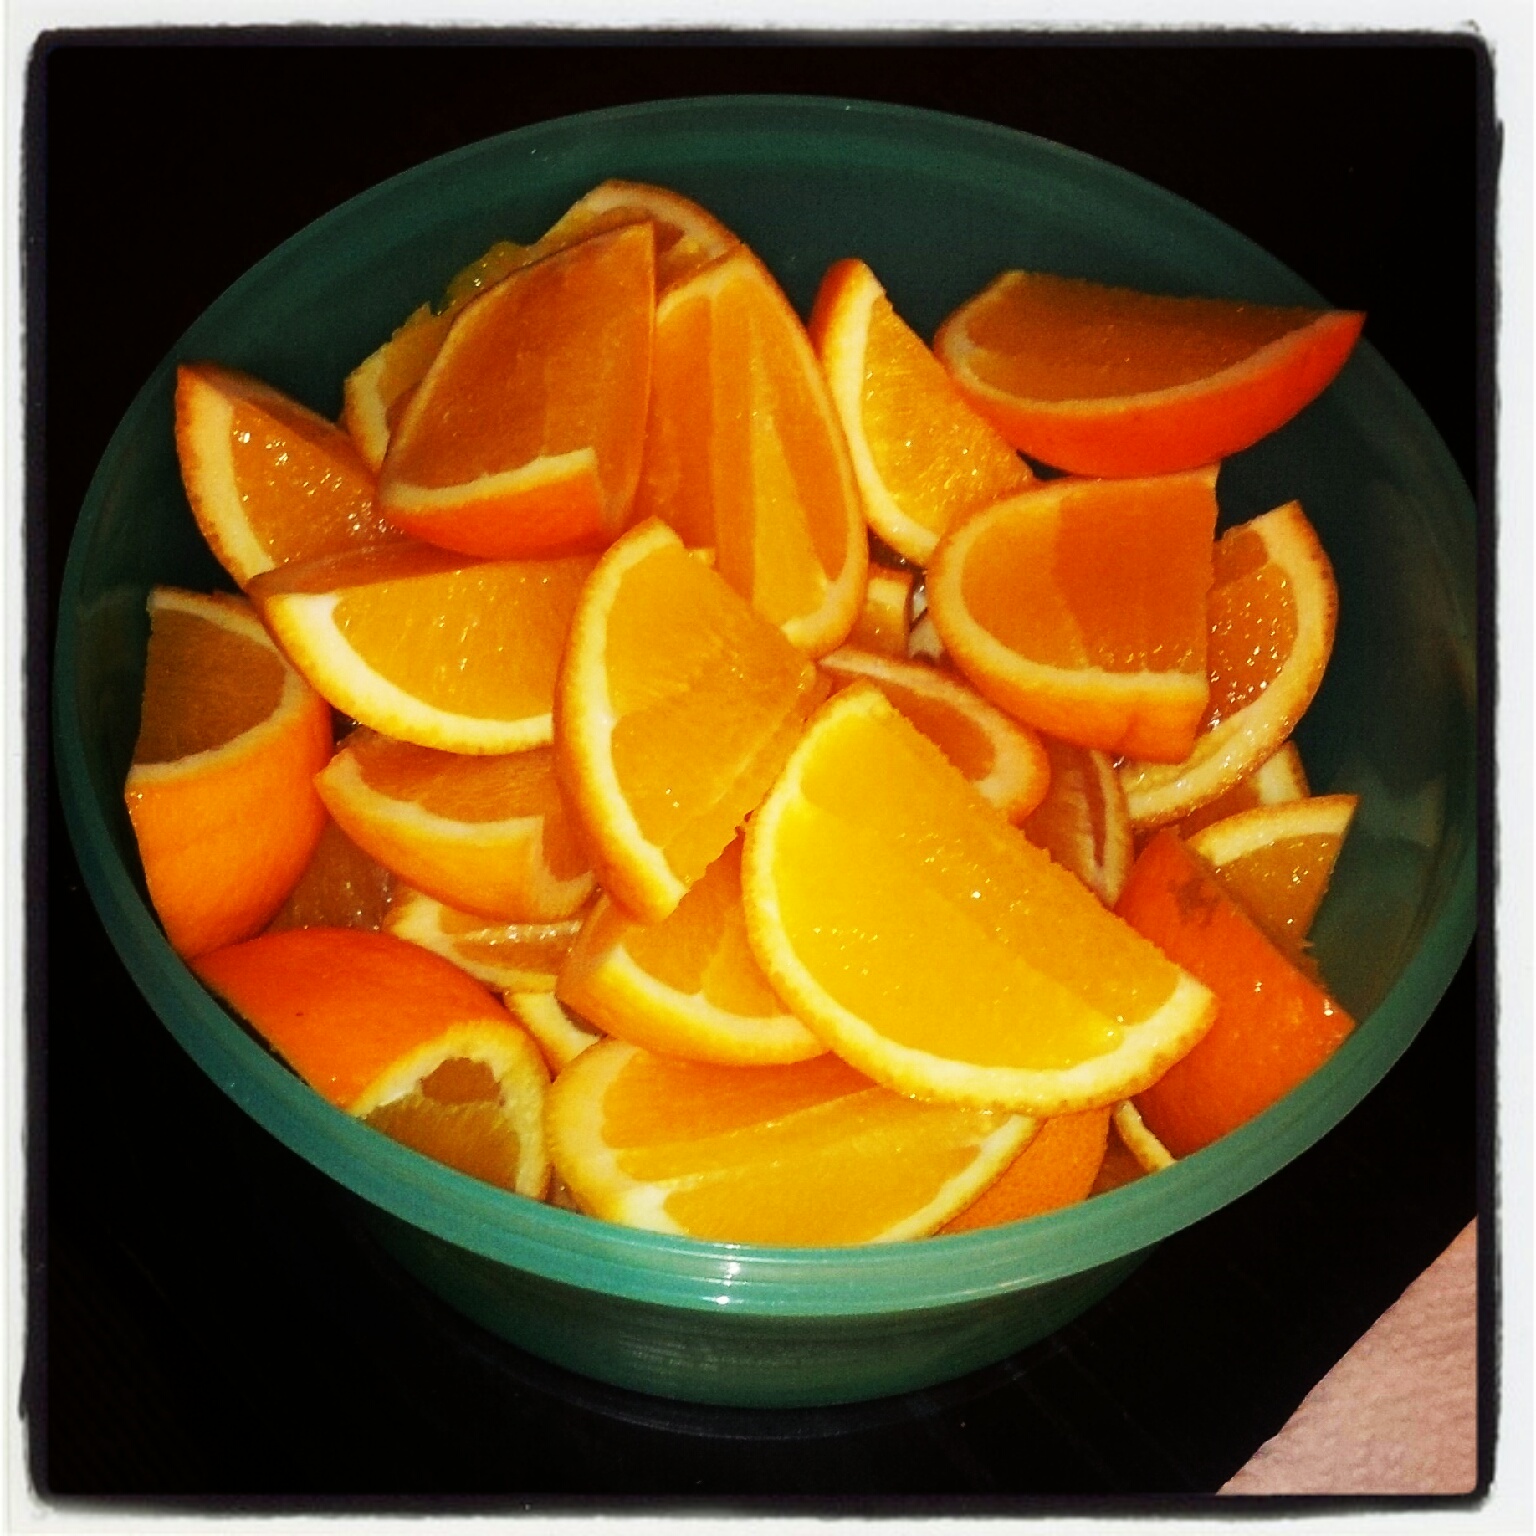 oranges 1